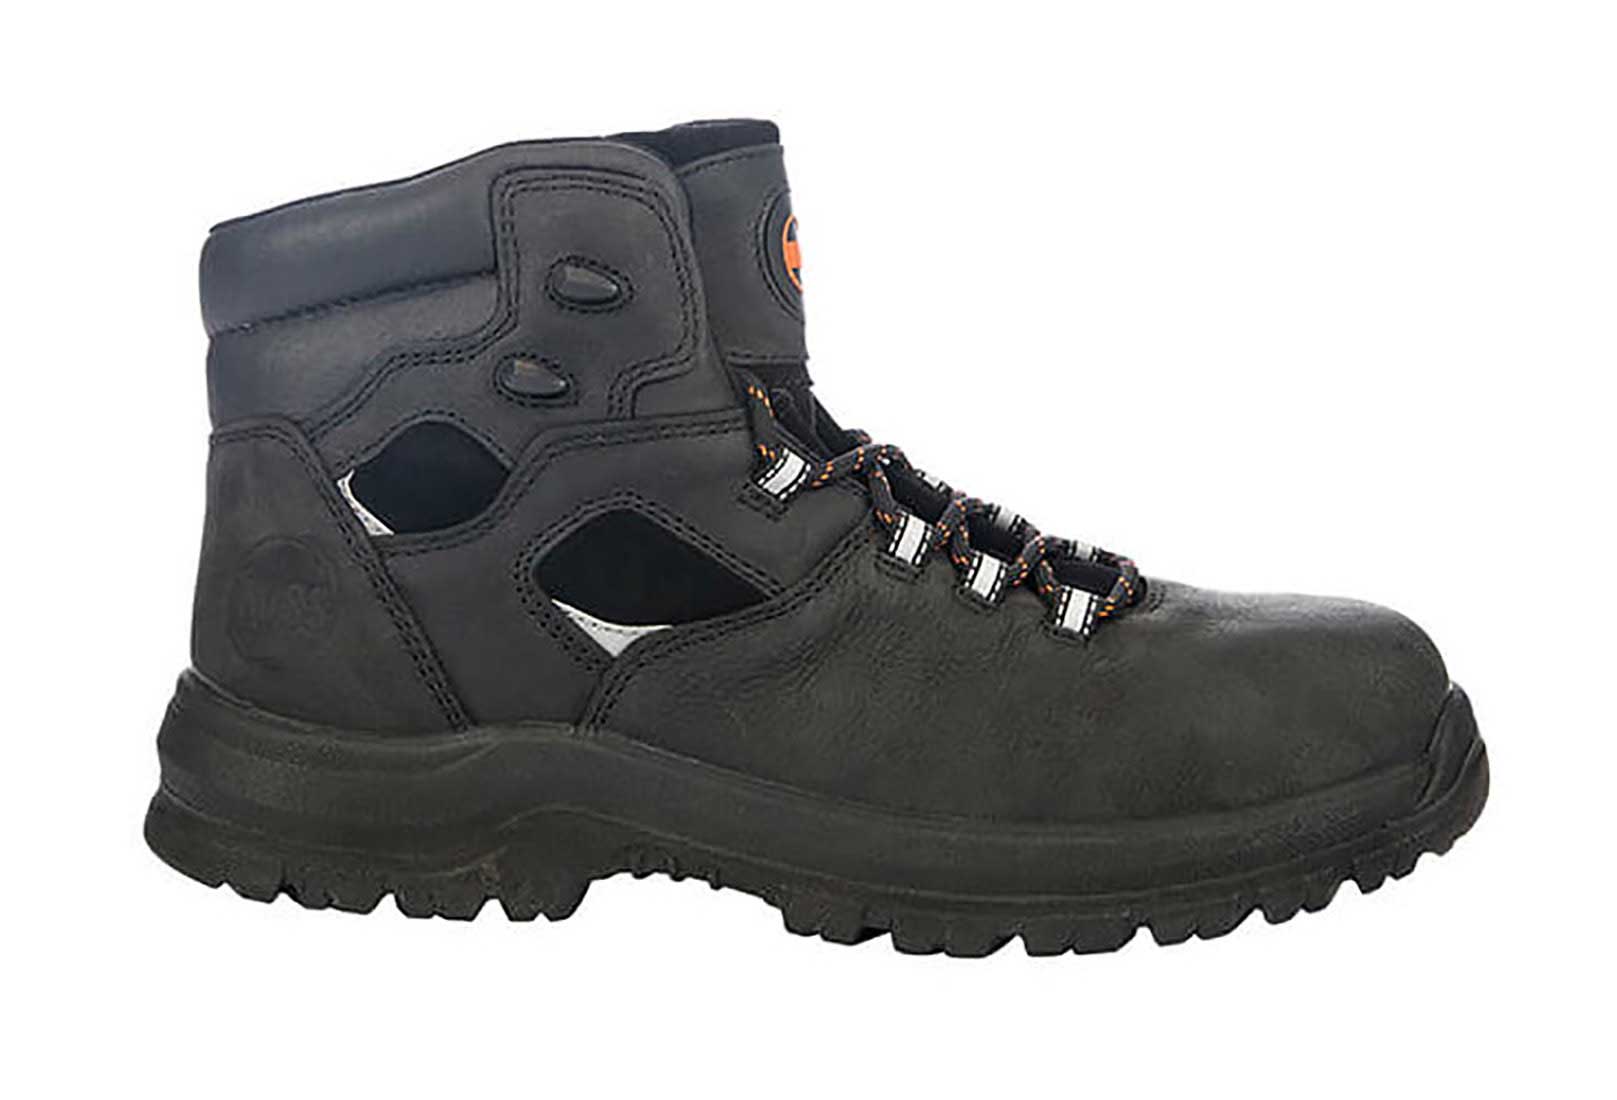 Hoss Boots Men's Lorne Black 60174 6 inch Waterproof Soft Toe Work ...